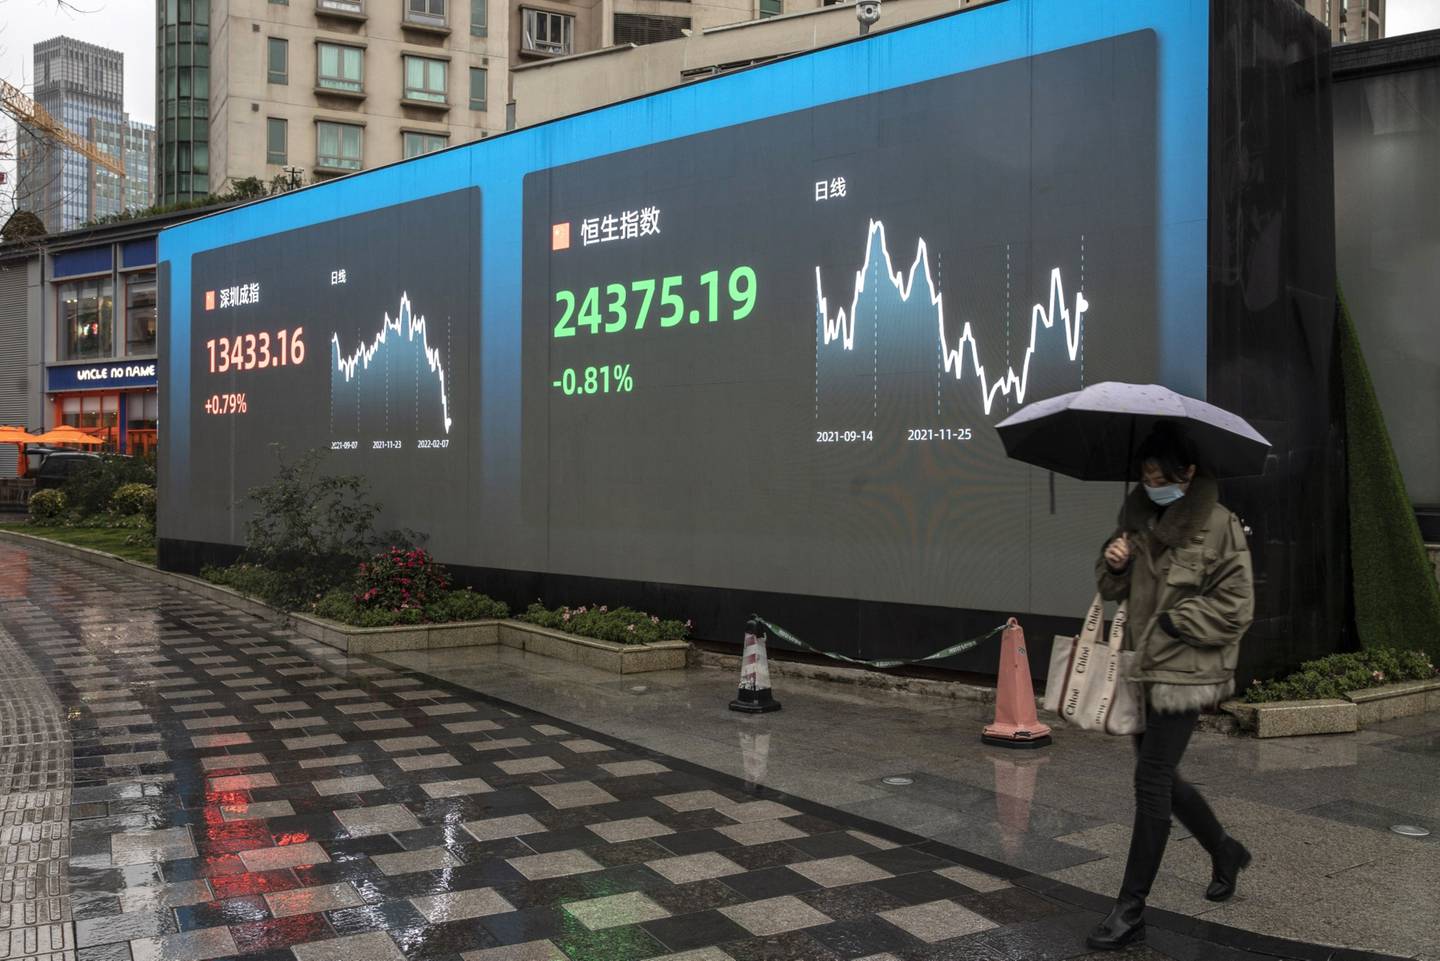 Una pantalla pública muestra las cifras de la Bolsa de Shenzhen y del índice Hang Seng en Shanghái, China, el lunes 7 de febrero de 2022.